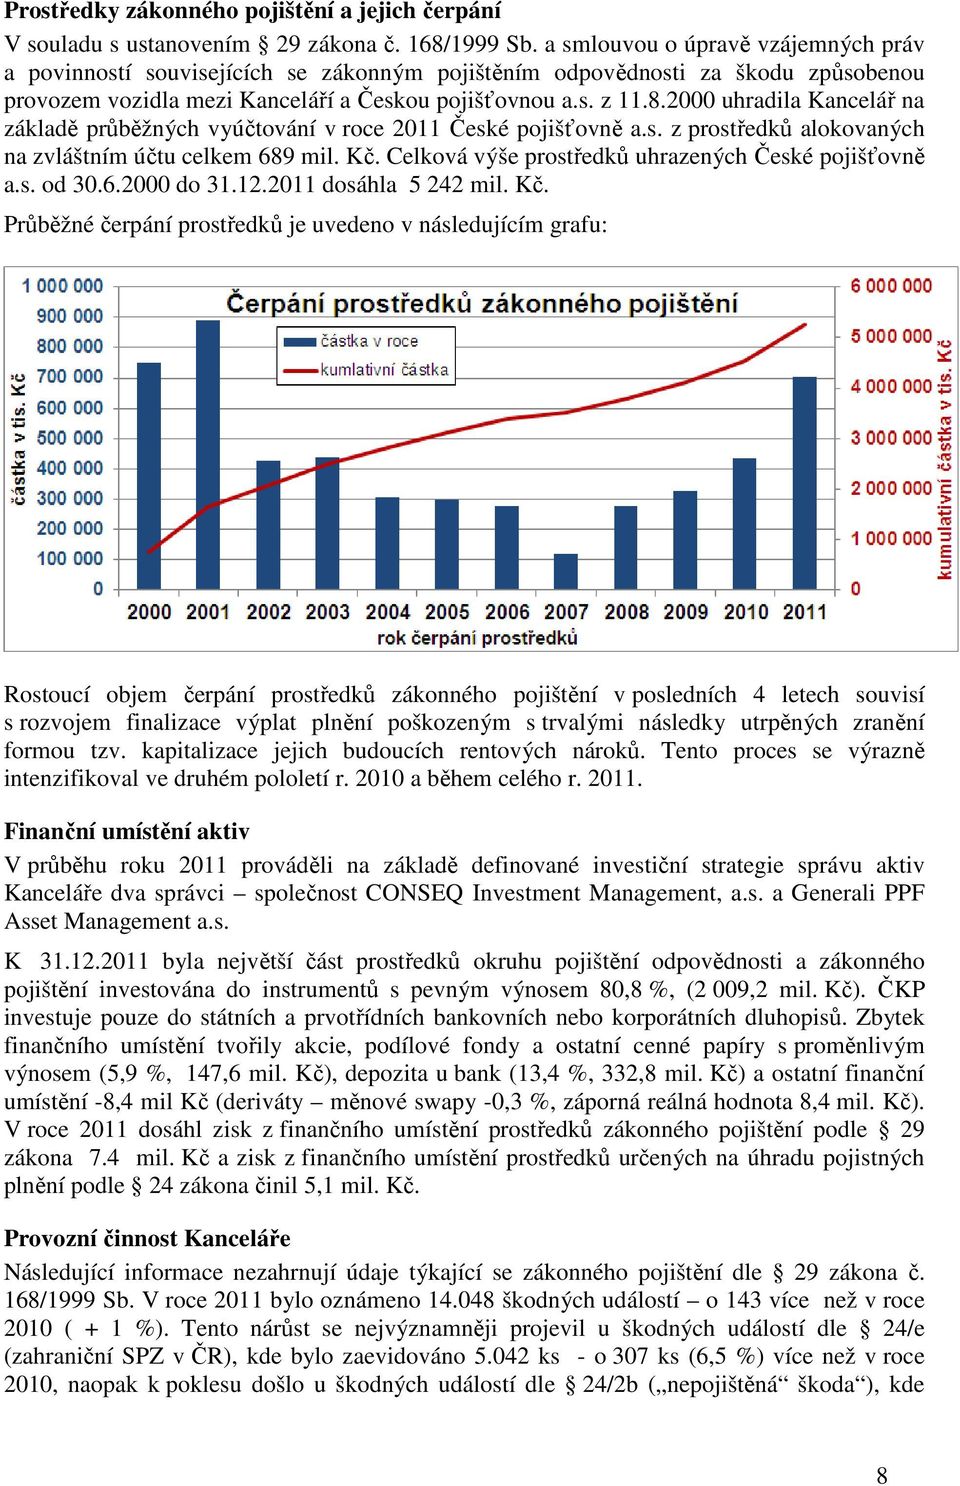 2000 uhradila Kancelář na základě průběžných vyúčtování v roce 2011 České pojišťovně a.s. z prostředků alokovaných na zvláštním účtu celkem 689 mil. Kč.